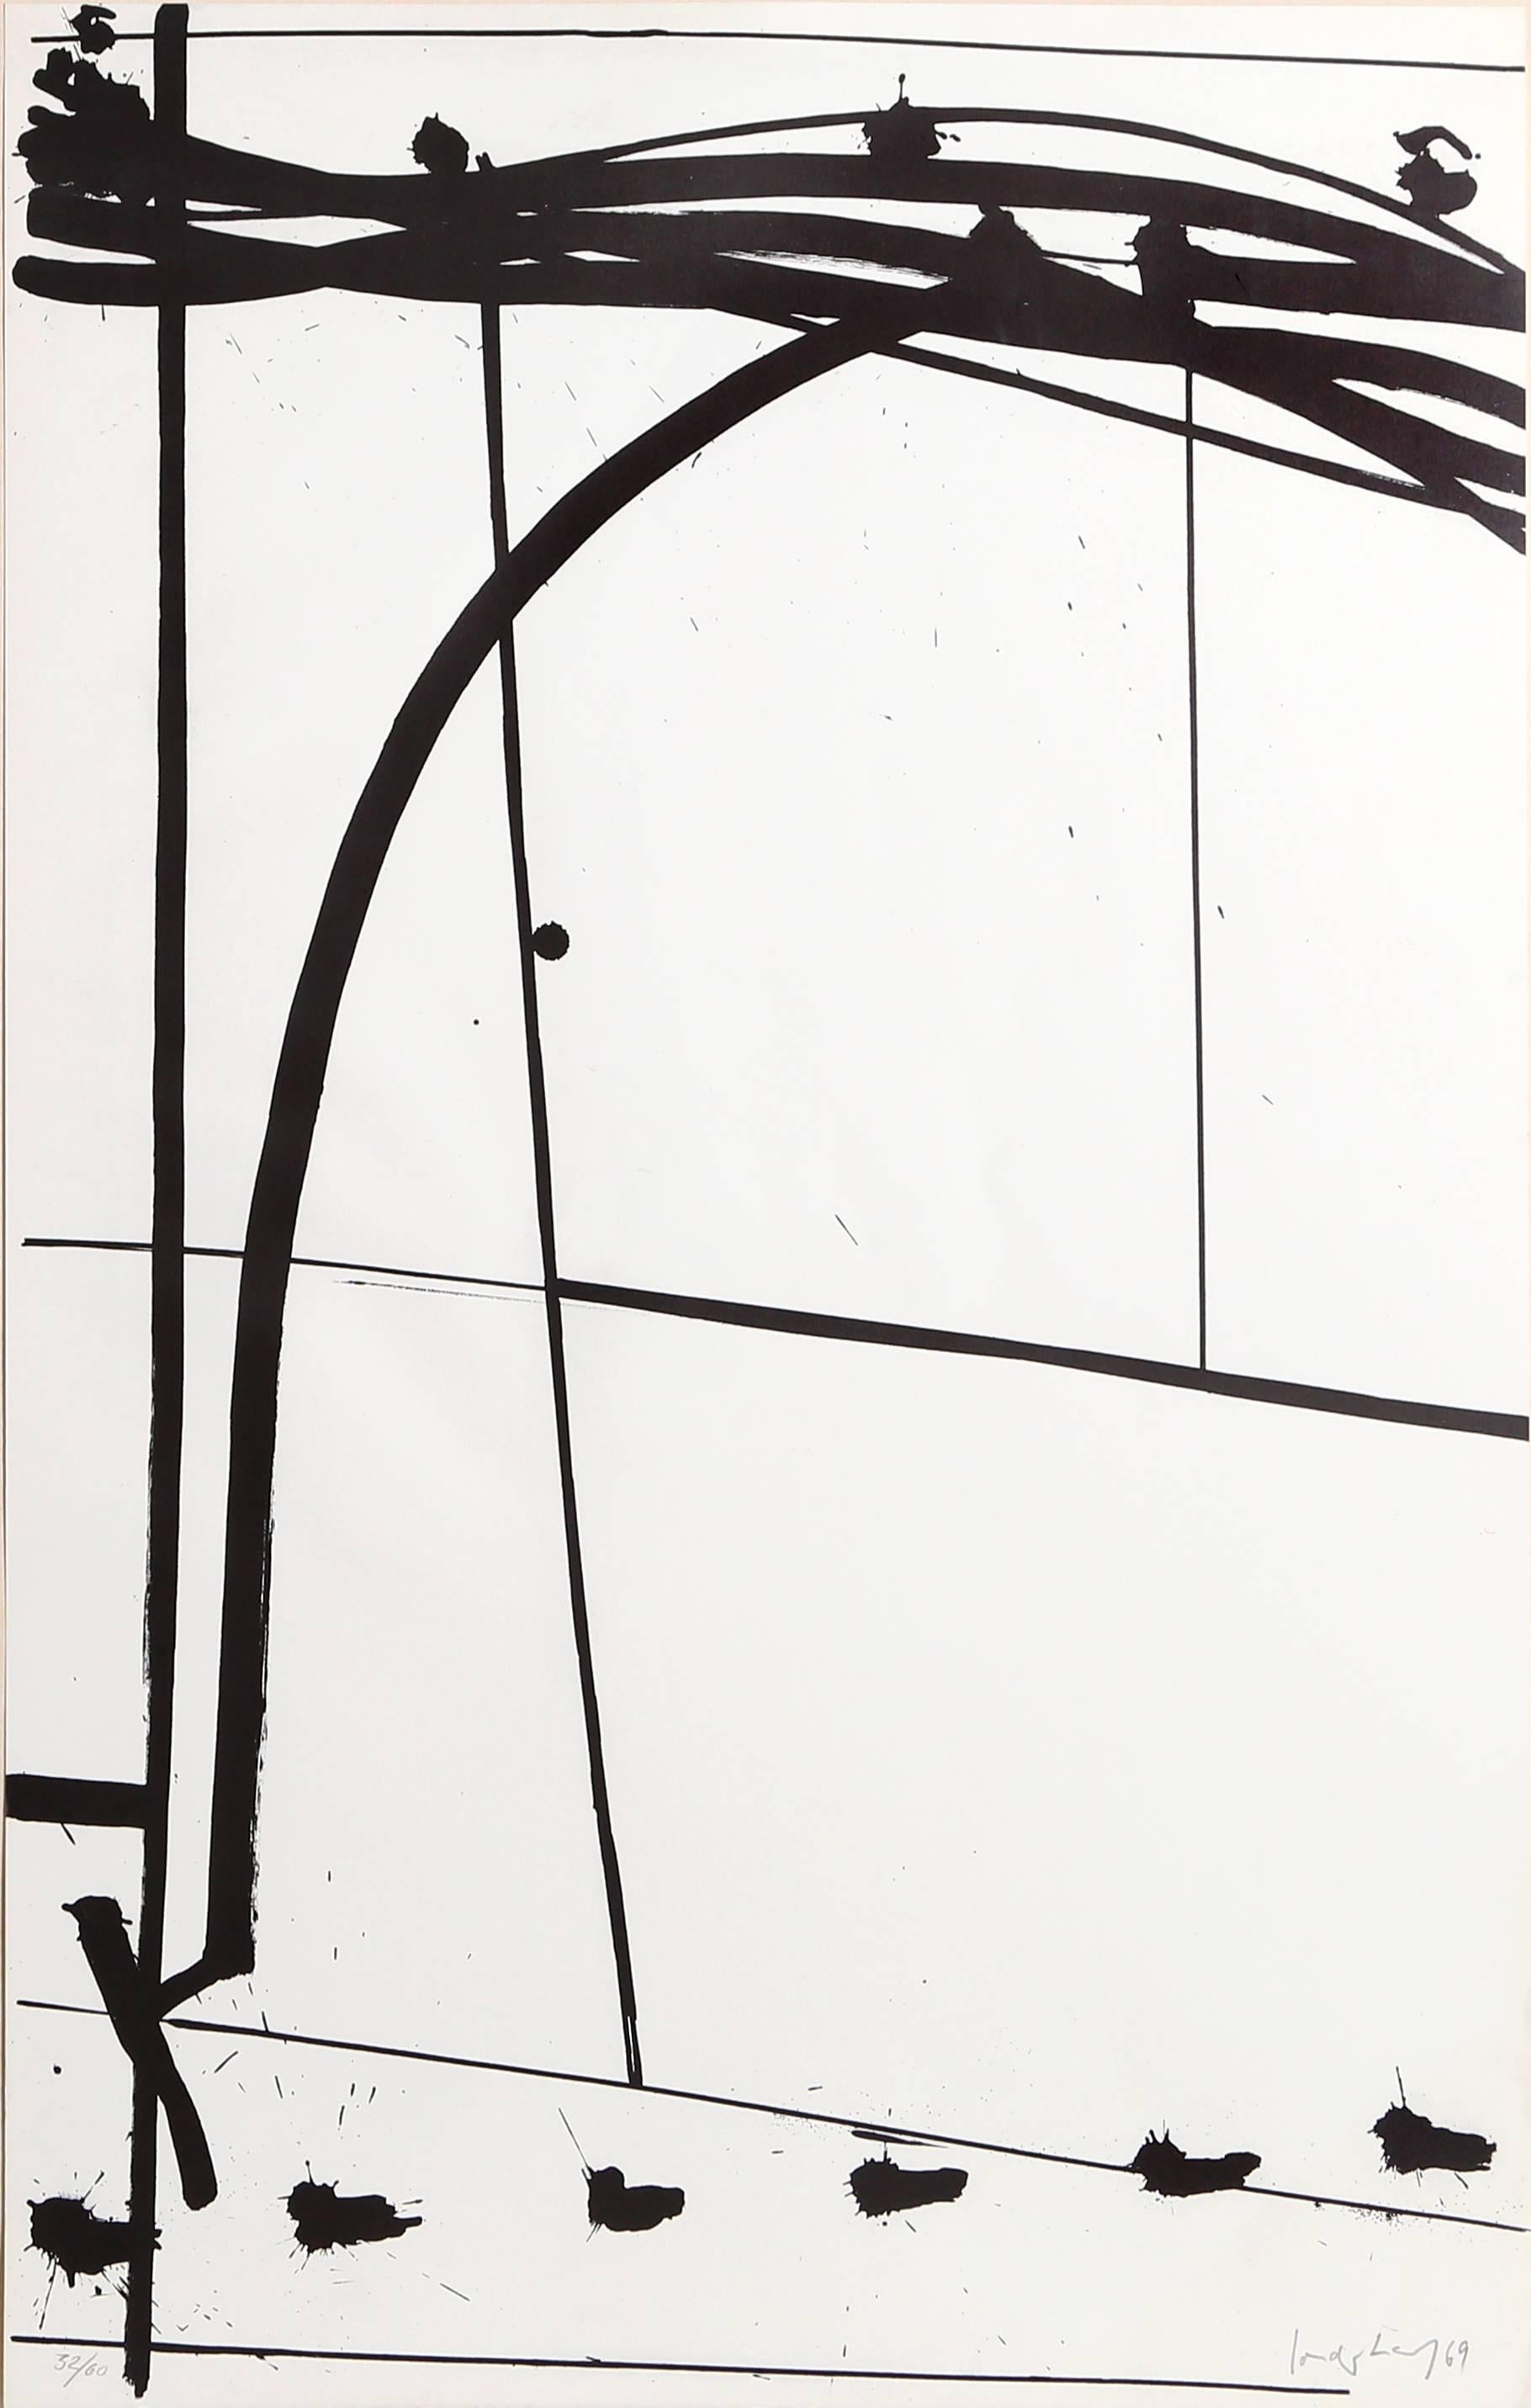 Künstler: K.R.H. Sonderborg, Däne (1923-2008)
Titel: Unbetitelt 3
Jahr: 1969
Medium: Lithographie, mit Bleistift signiert und nummeriert
Auflage: 32/100
Größe: 39,5 Zoll x 24,5 Zoll (100,33 cm x 62,23 cm)